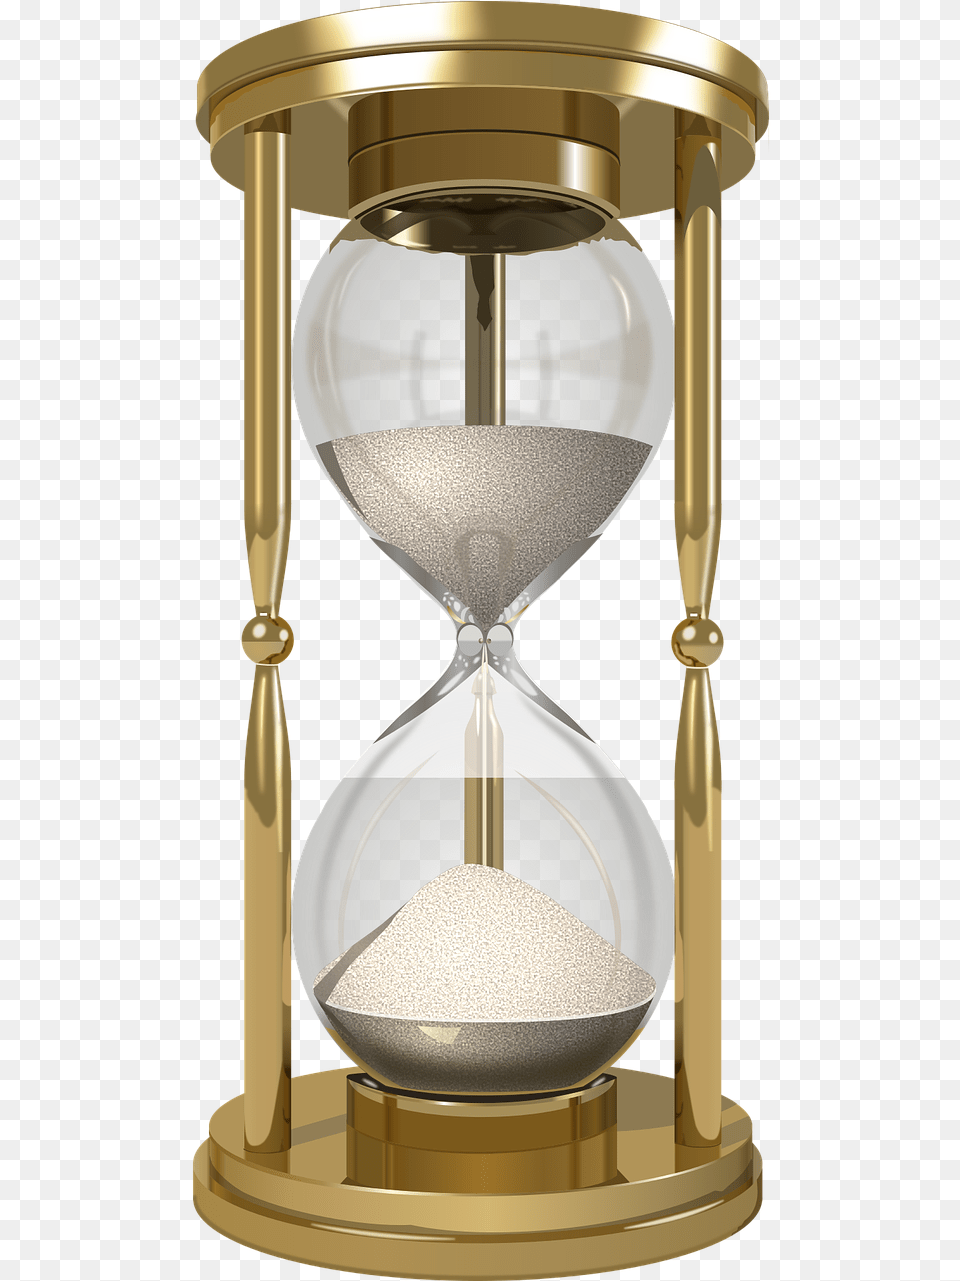 Reloj De Arena, Hourglass Png Image